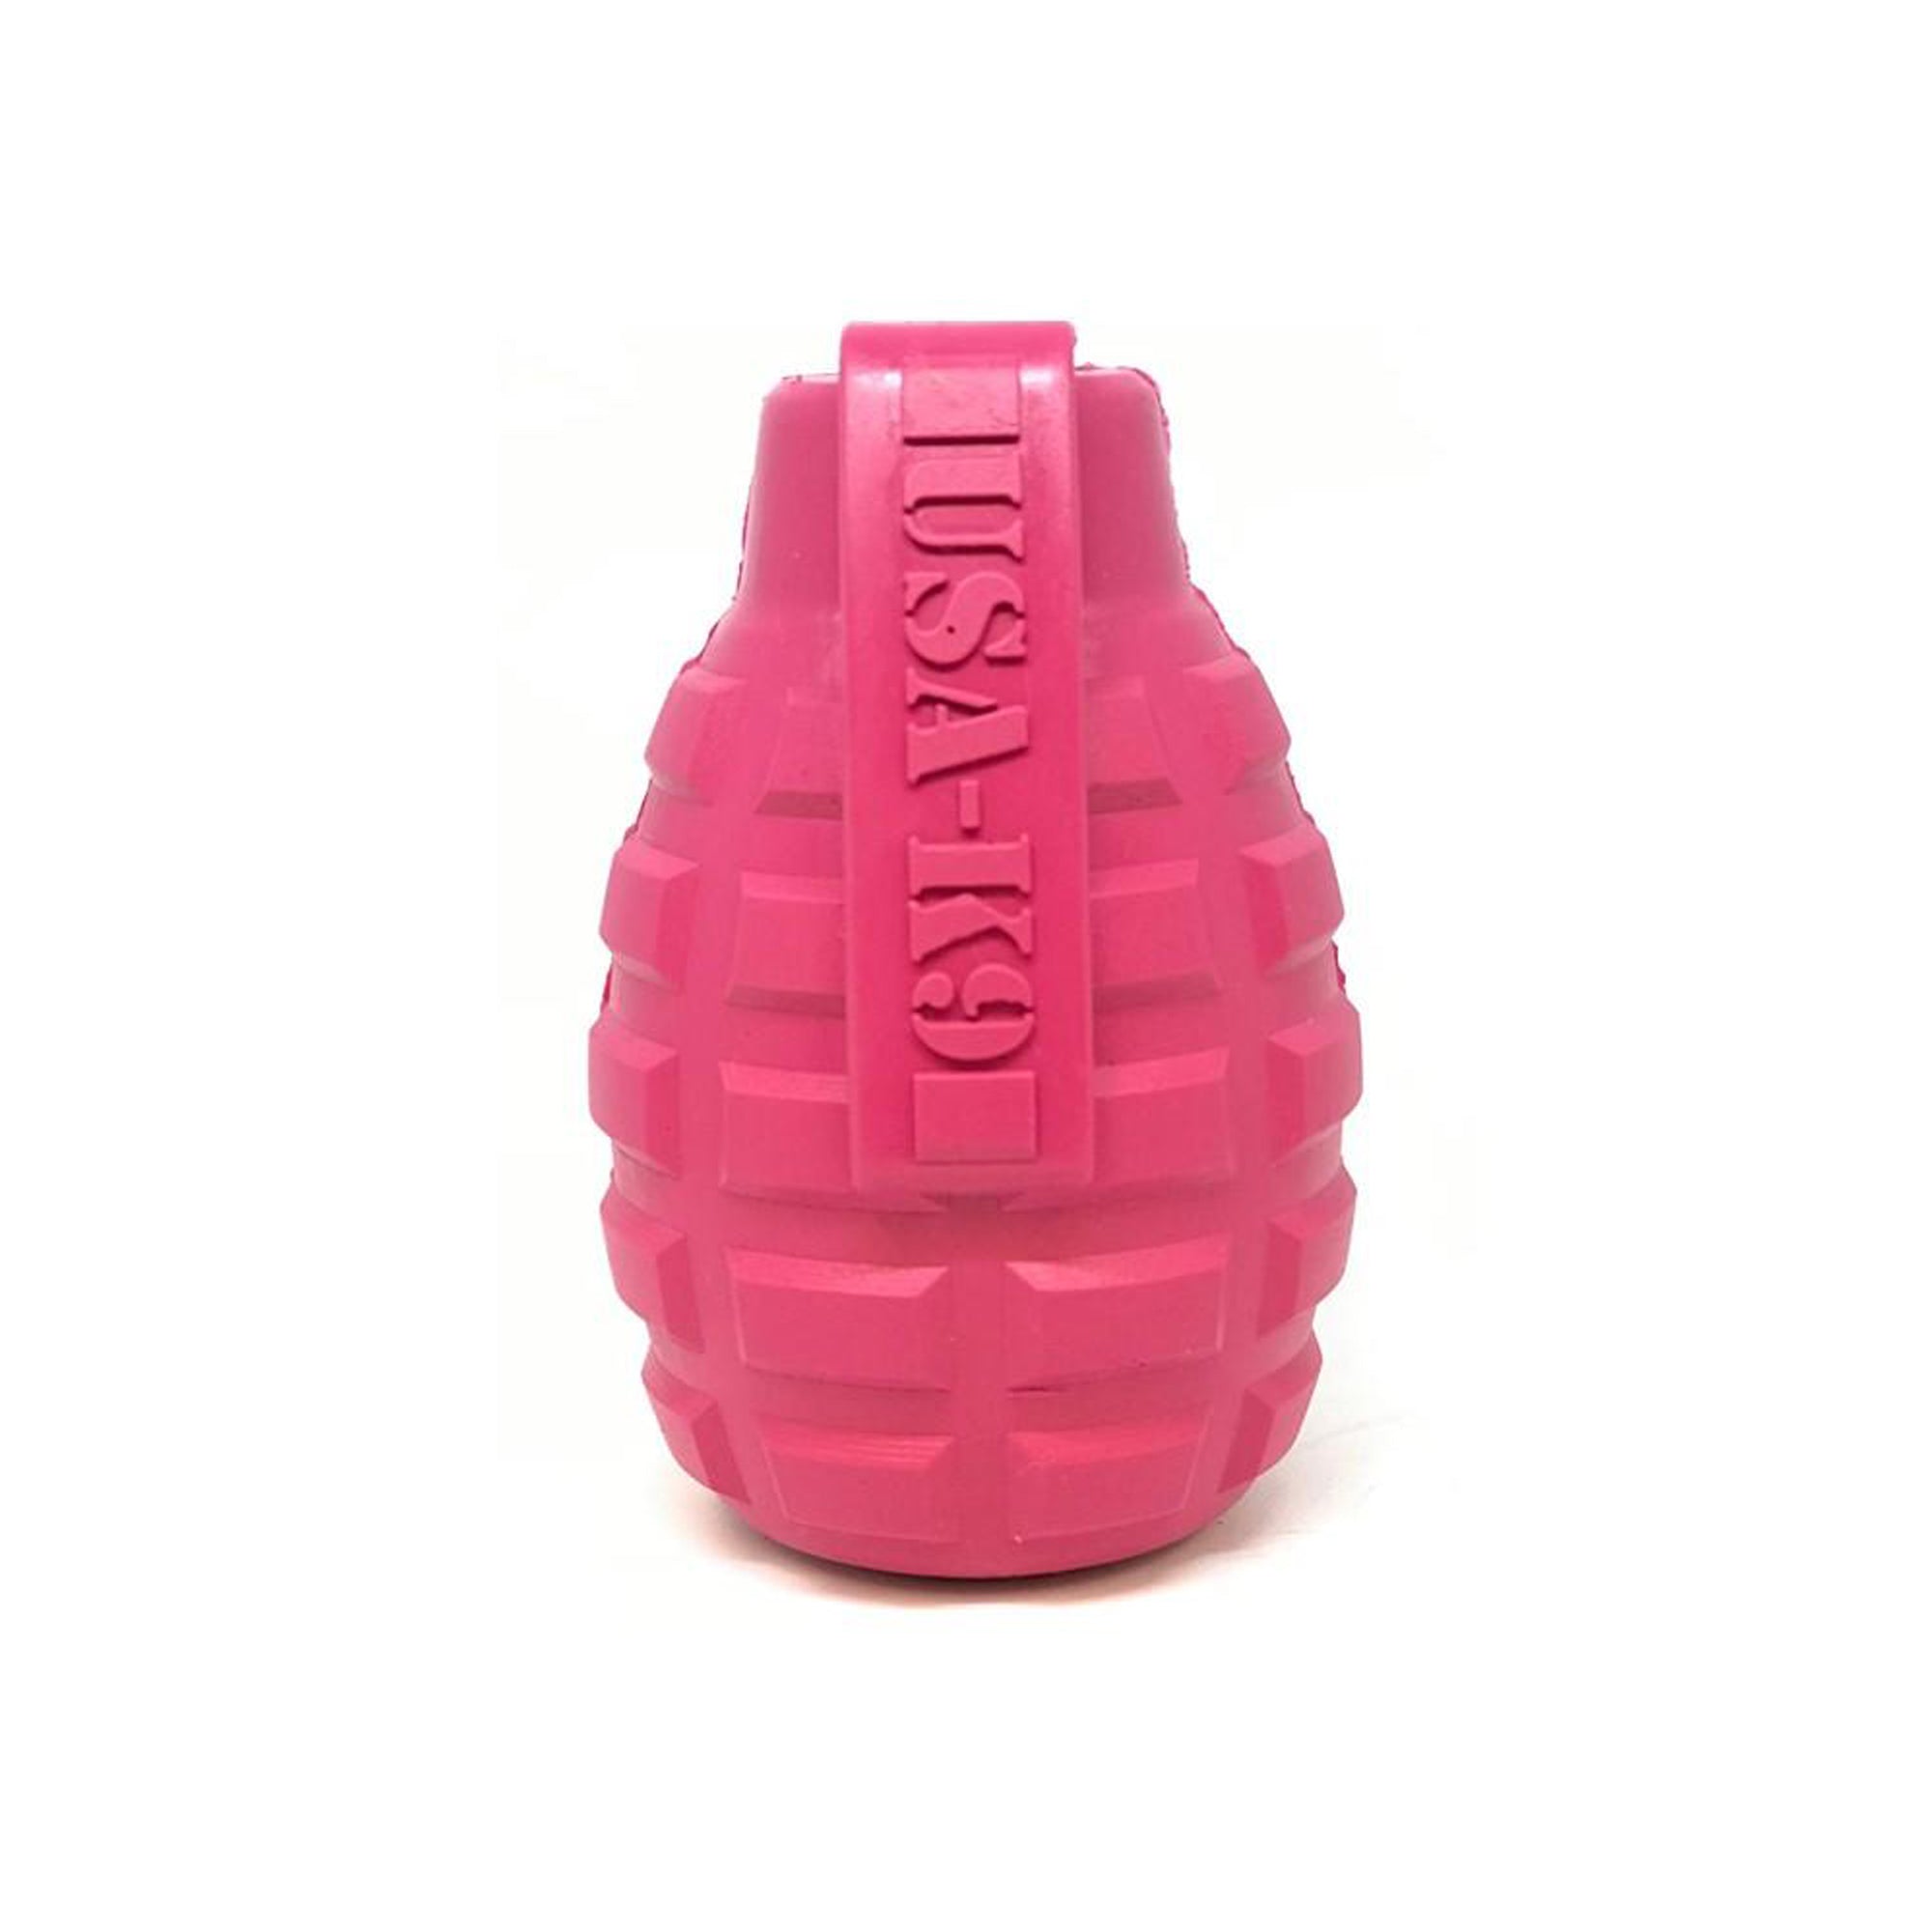 USA-K9 Puppy Grenade Langlebiger Kauspielzeug- und Leckerlispender aus Gummi für zahnende Welpen